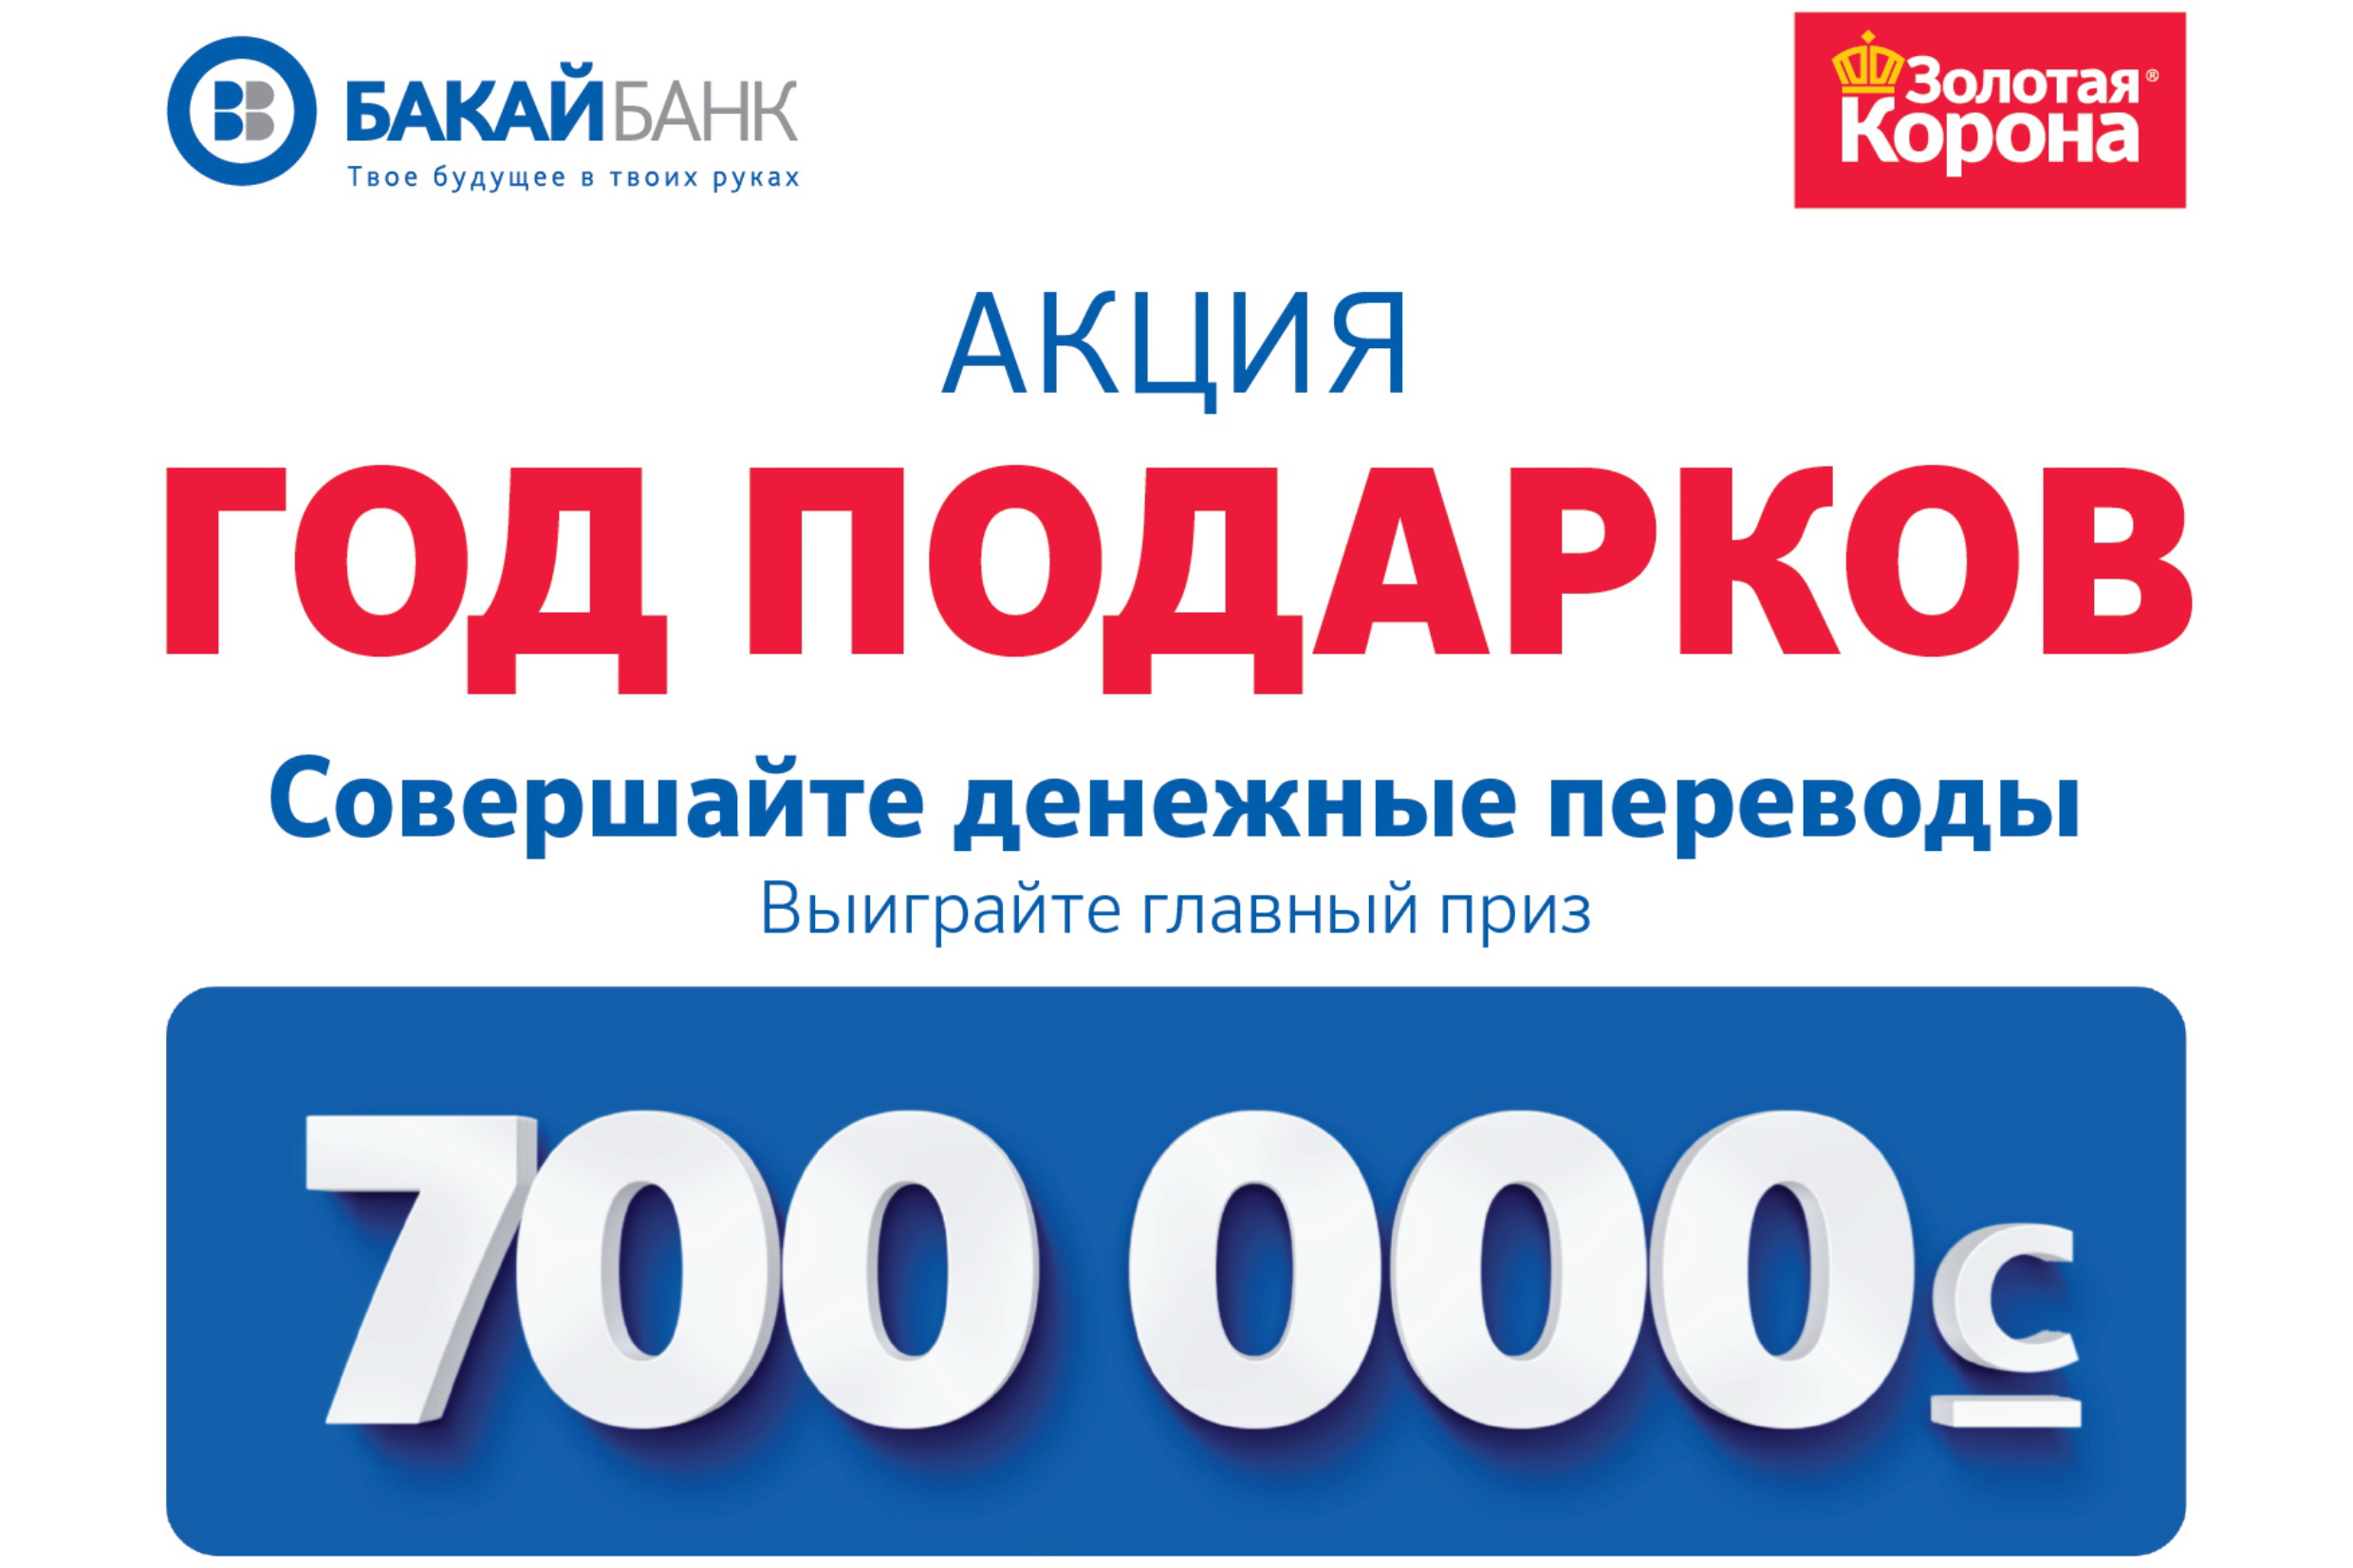 Бакай банк. Бакай банк Бишкек. Бакай банк логотип. Выиграй главный приз. Бакай банк курс